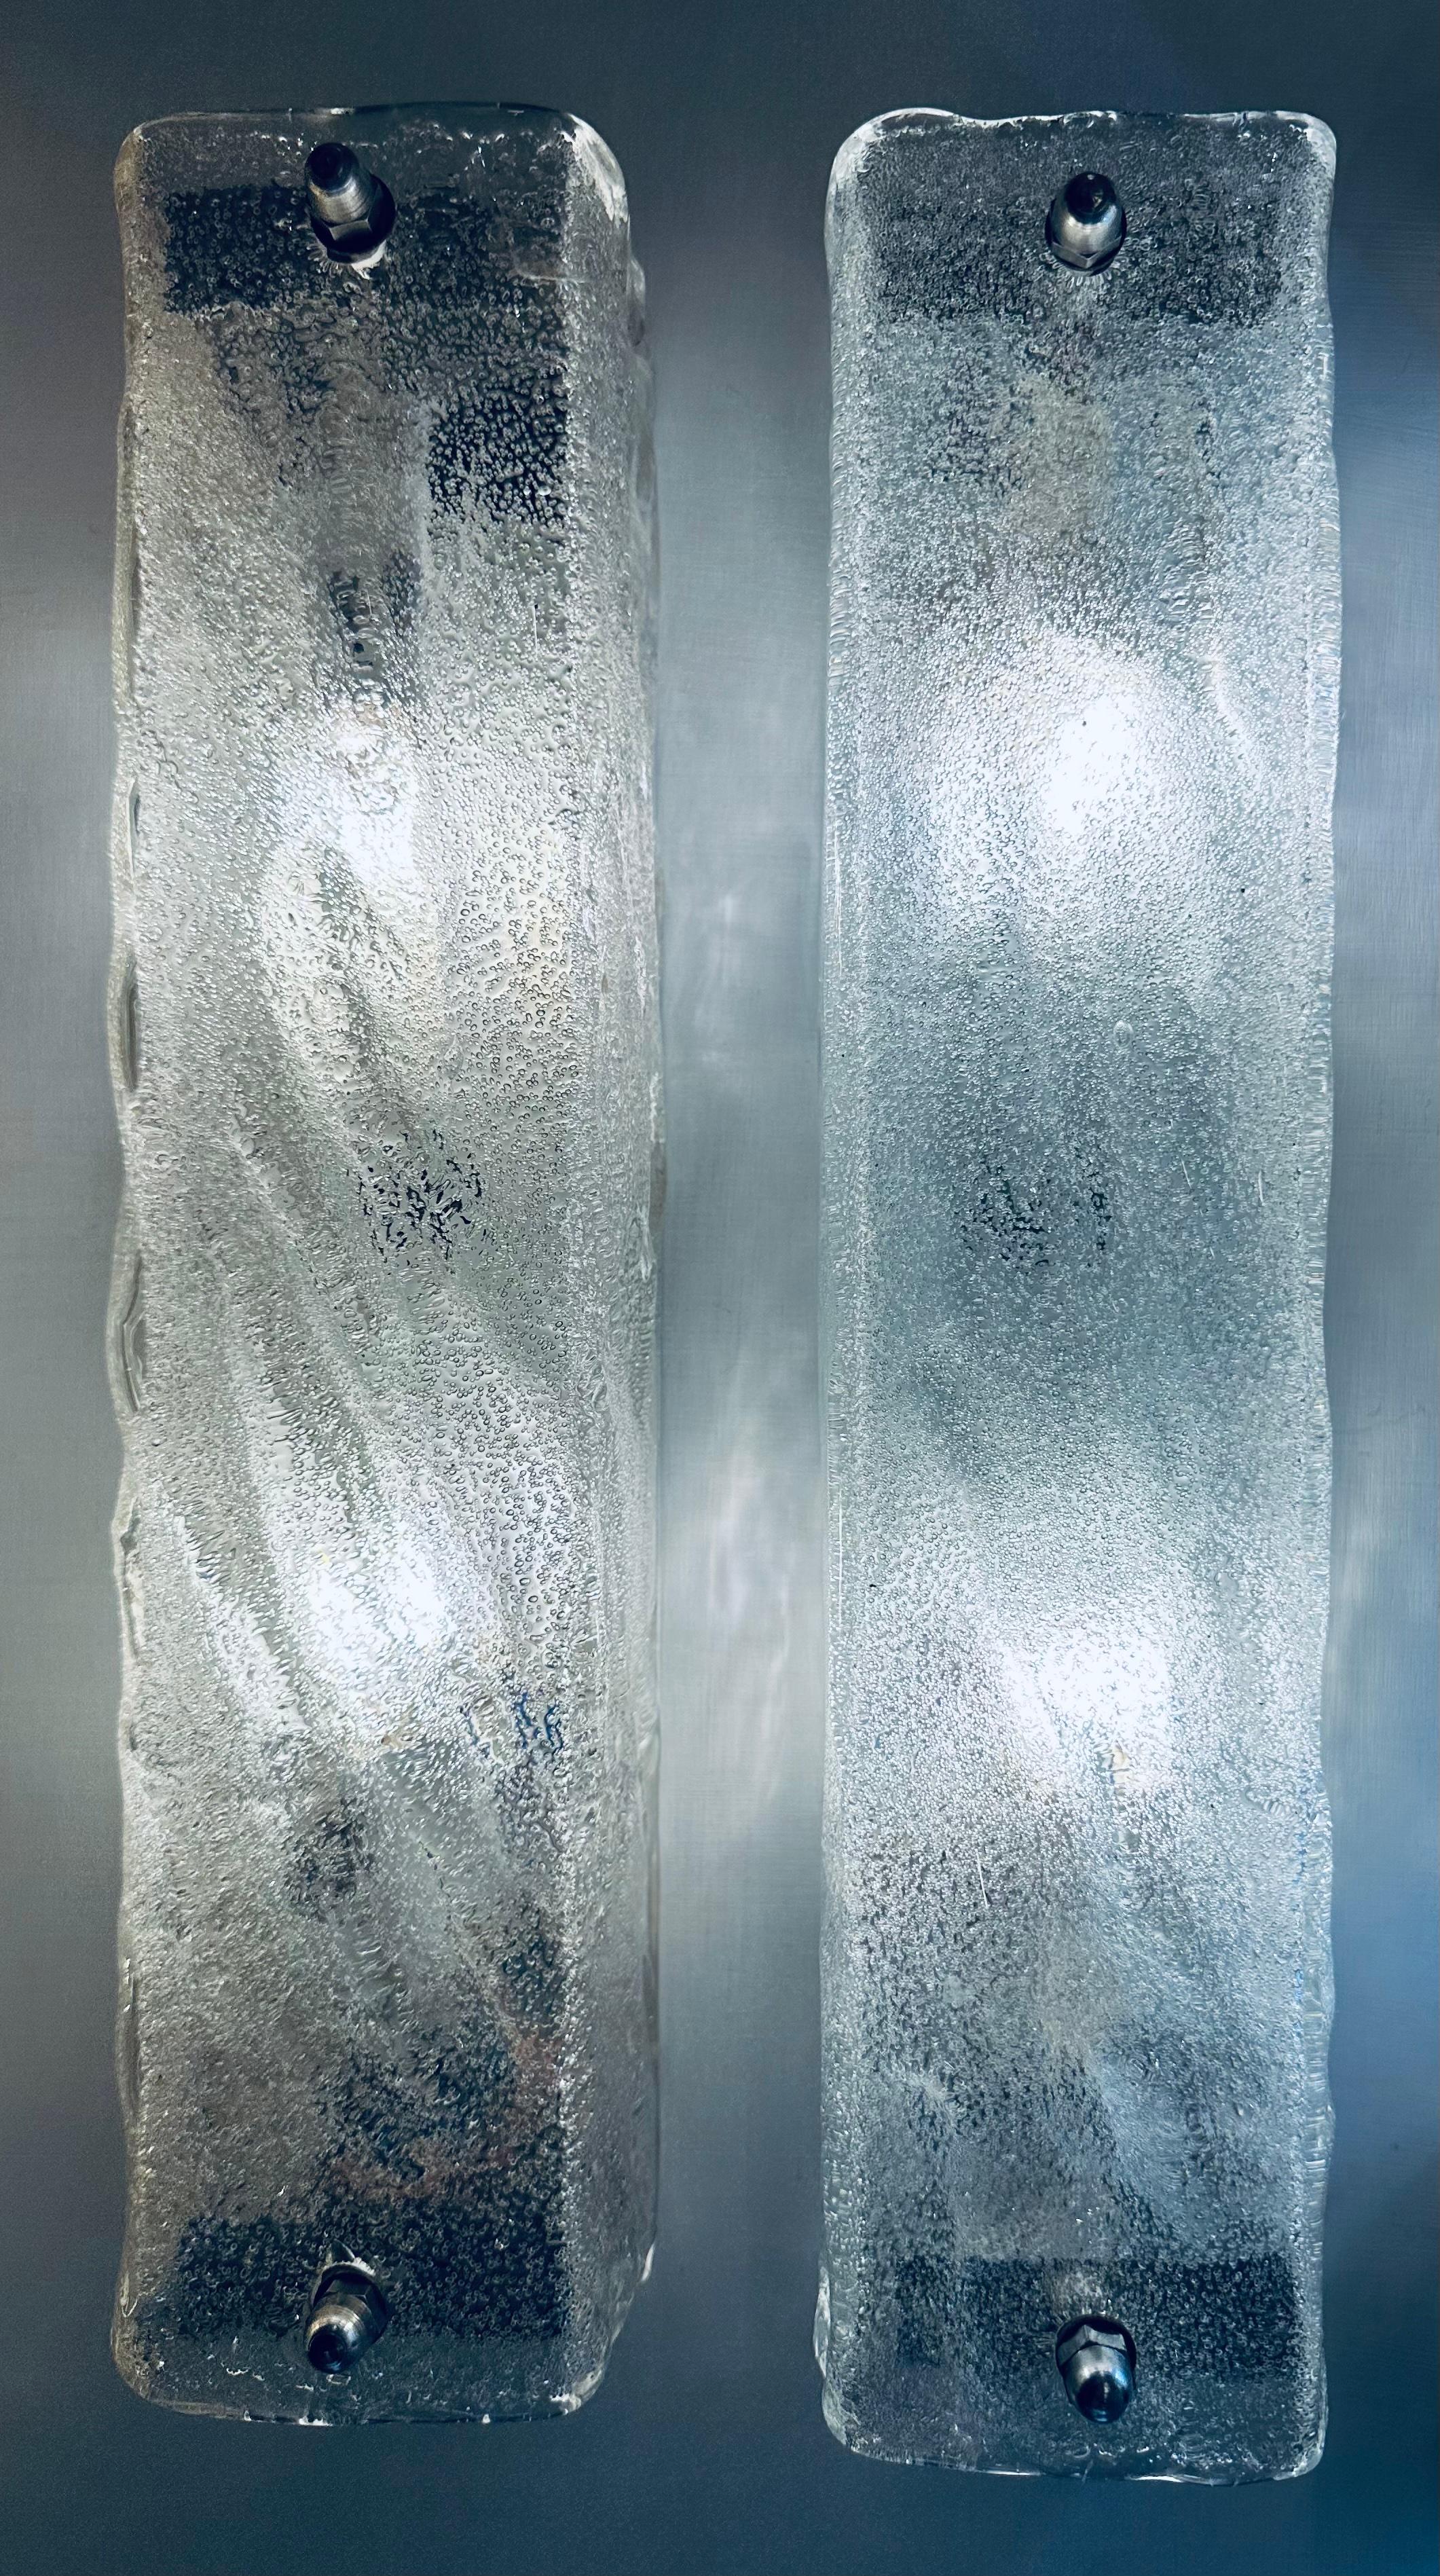 Paire d'appliques murales en verre givré des années 1970 fabriquées par le fabricant allemand de luminaires haut de gamme Kaiser Leuchten. Le verre texturé rectangulaire épais se visse sur un cadre métallique blanc qui se visse facilement au mur.